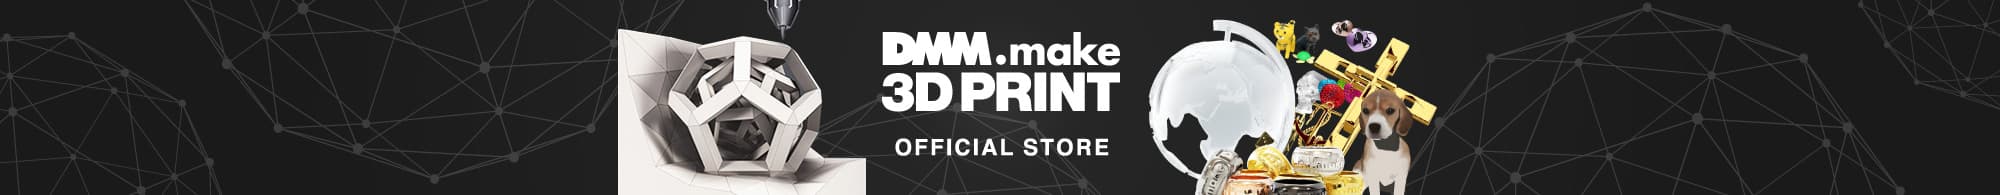 DMM.make 3D PRINT official store